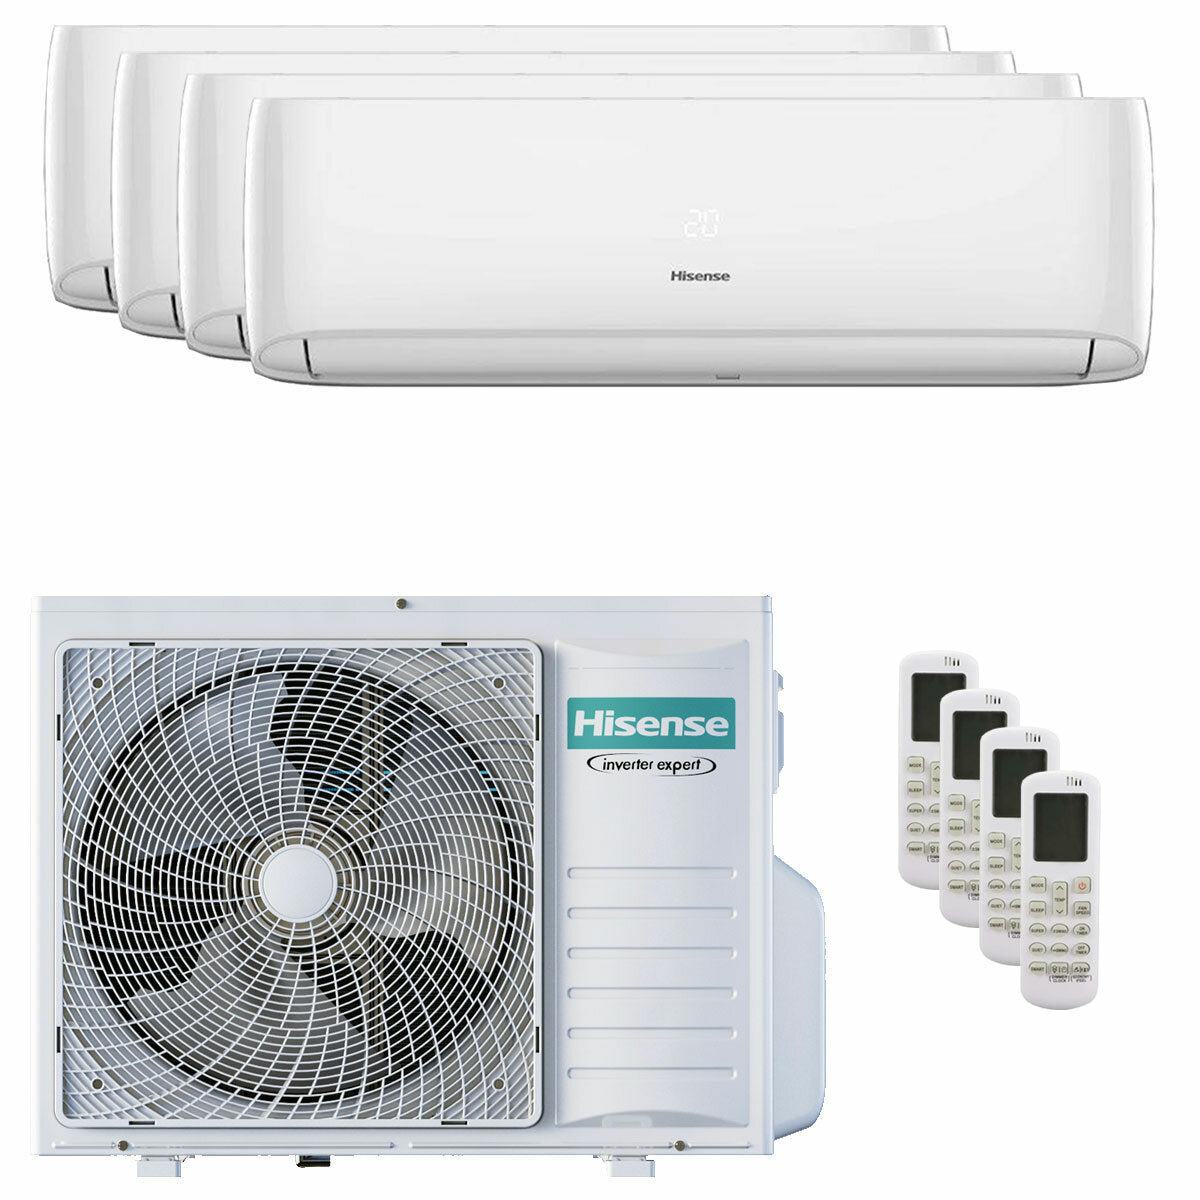 Hisense Hi-Comfort climatiseur split quadri 7000 + 9000 + 9000 + 12000 BTU onduleur A++ wifi unité extérieure 8 kW